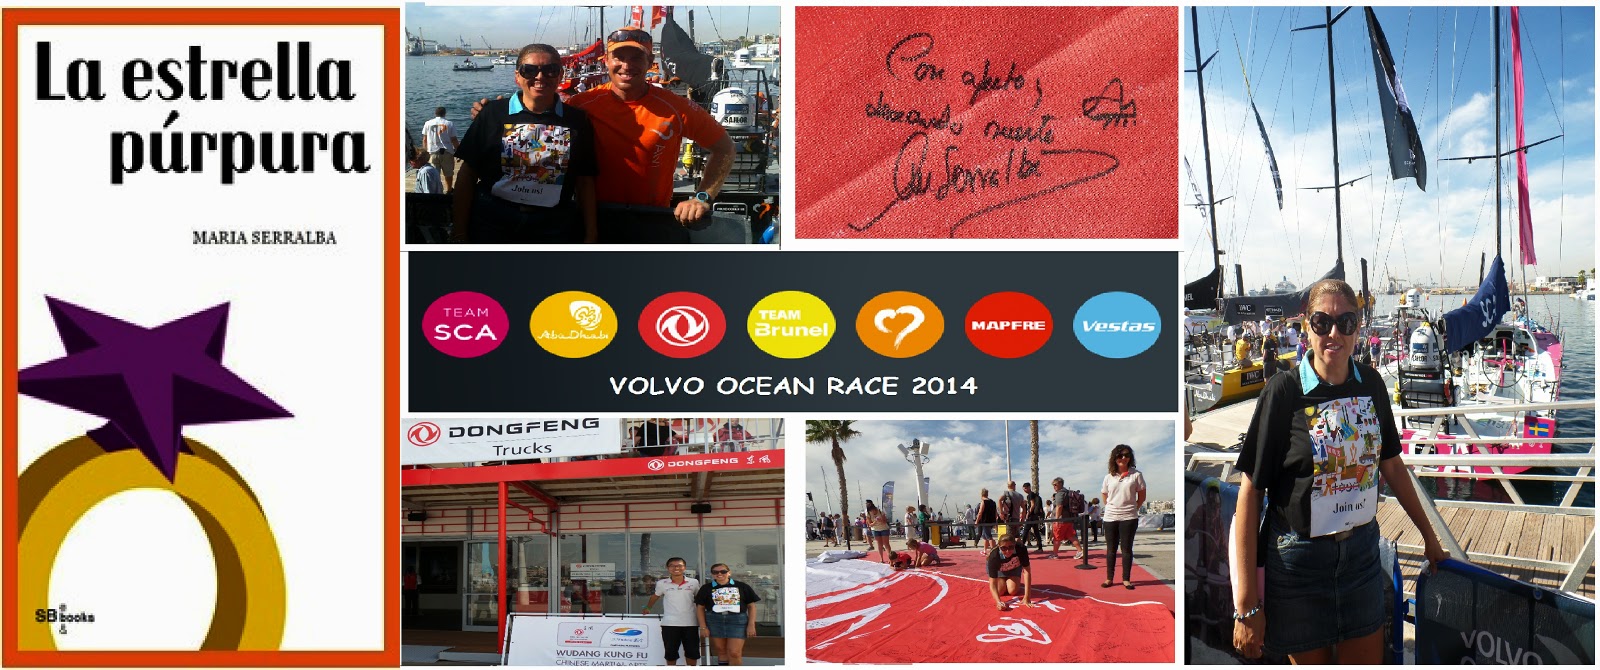 El Blog de María Serralba-Mi vista a la Volvo Ocean Race 2014